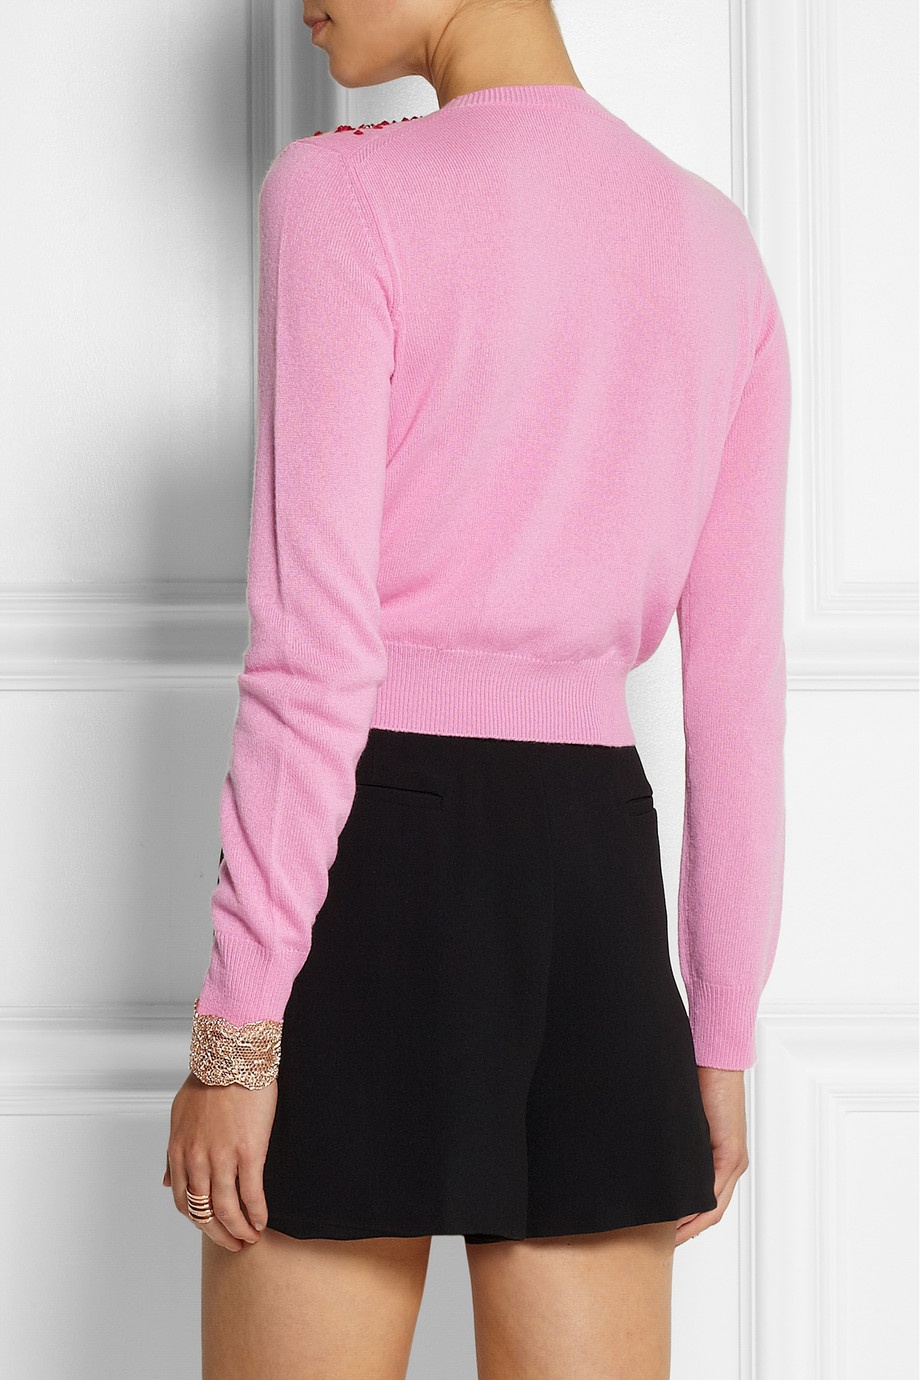 Miu Miu Embellished Cashmere Sweater in Pink - Lyst